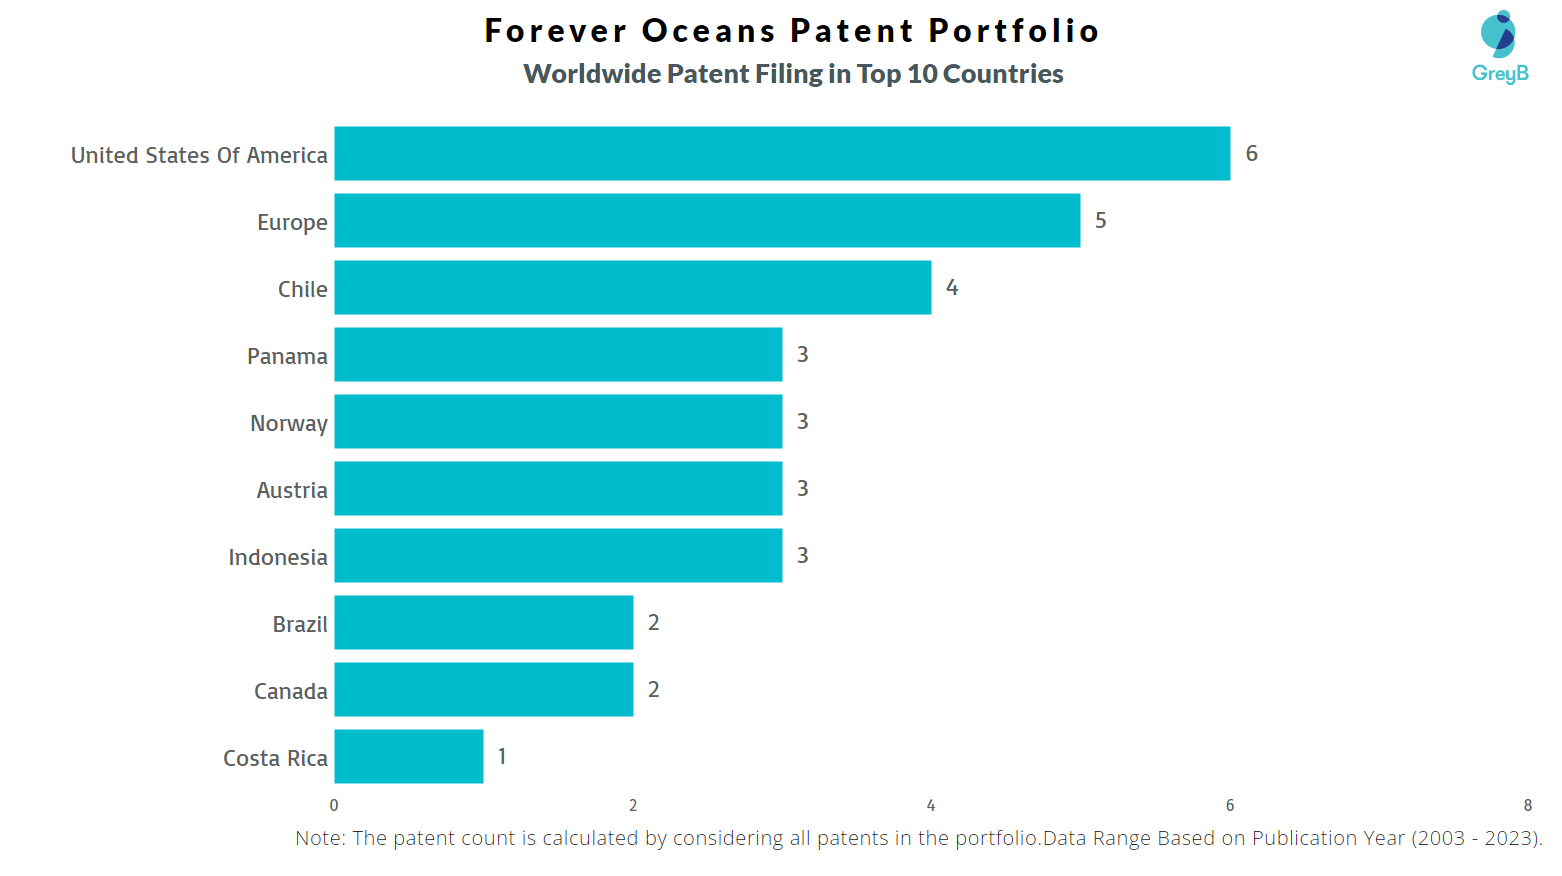 Forever Oceans Worldwide Patent Filing